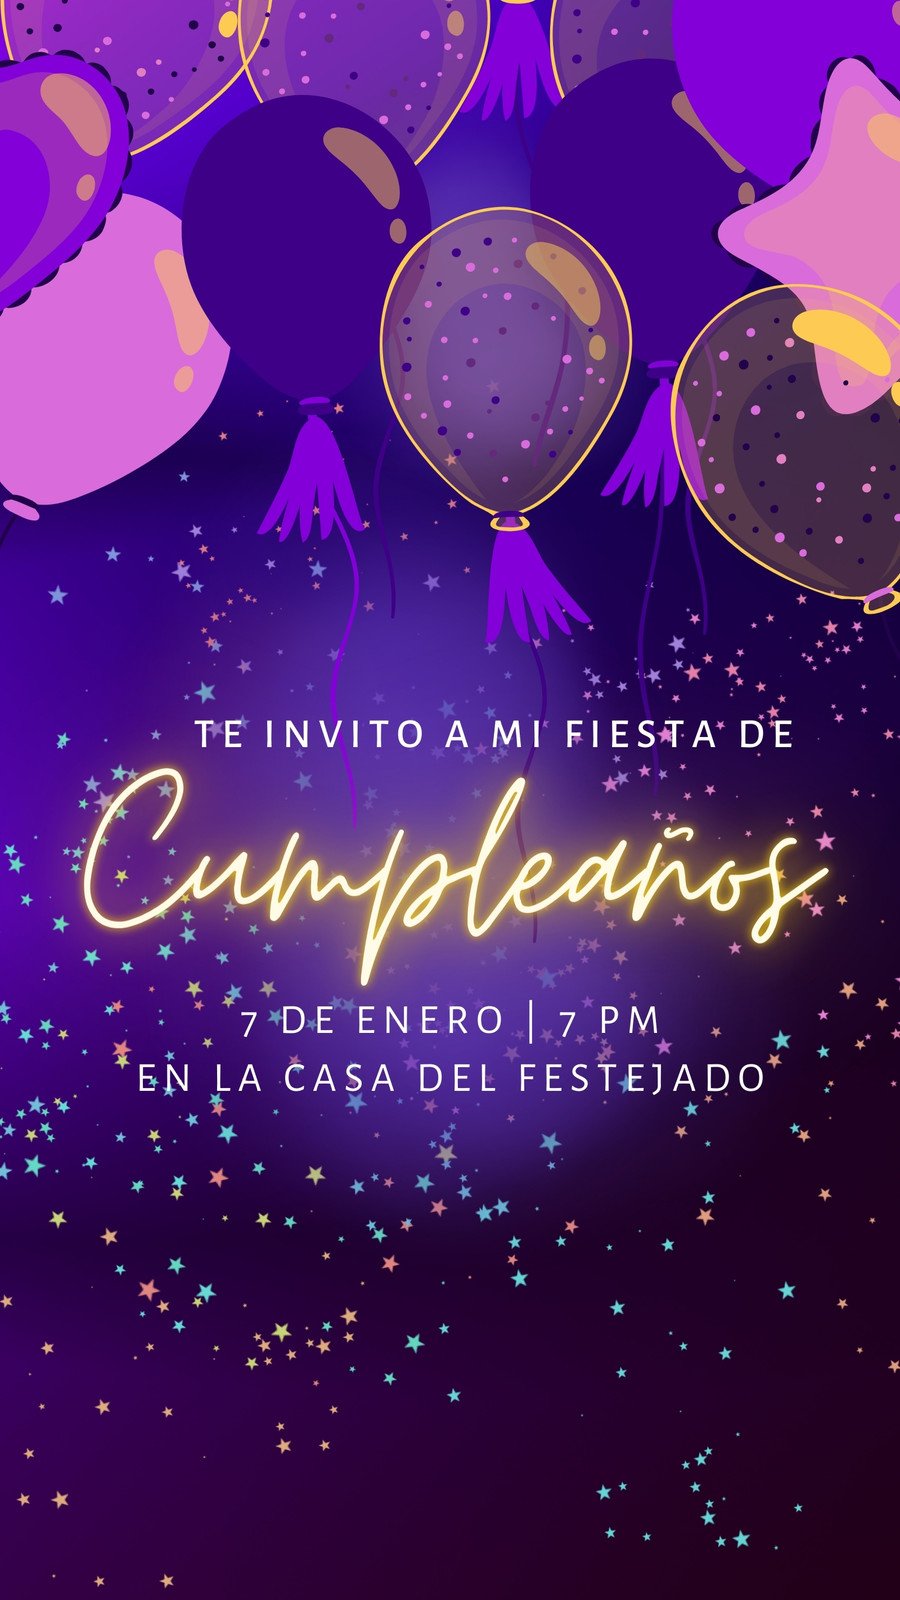 30 birthday  Fiestas de cumpleaños número 30, Crear invitaciones de  cumpleaños, Globos